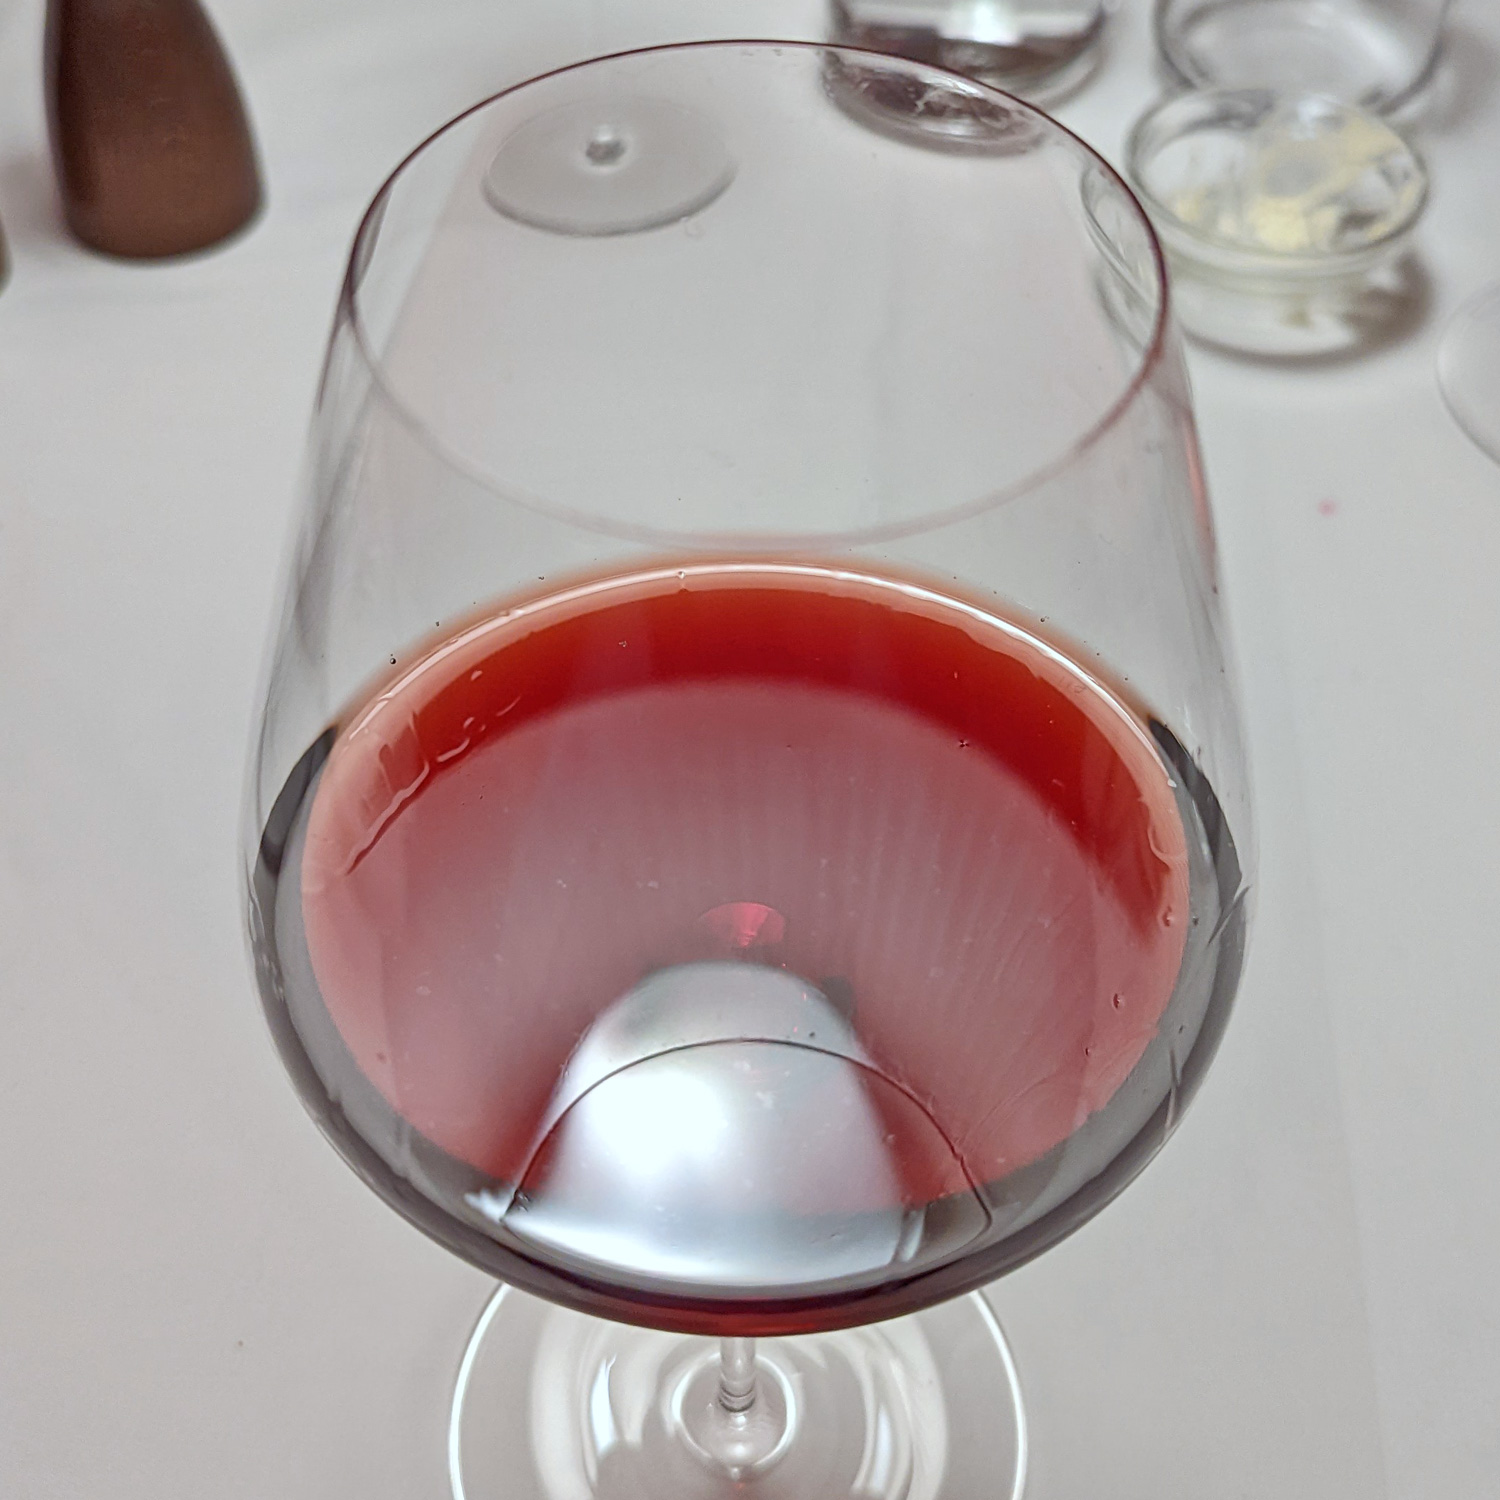 Ausgezeichnet köstlicher Rotwein